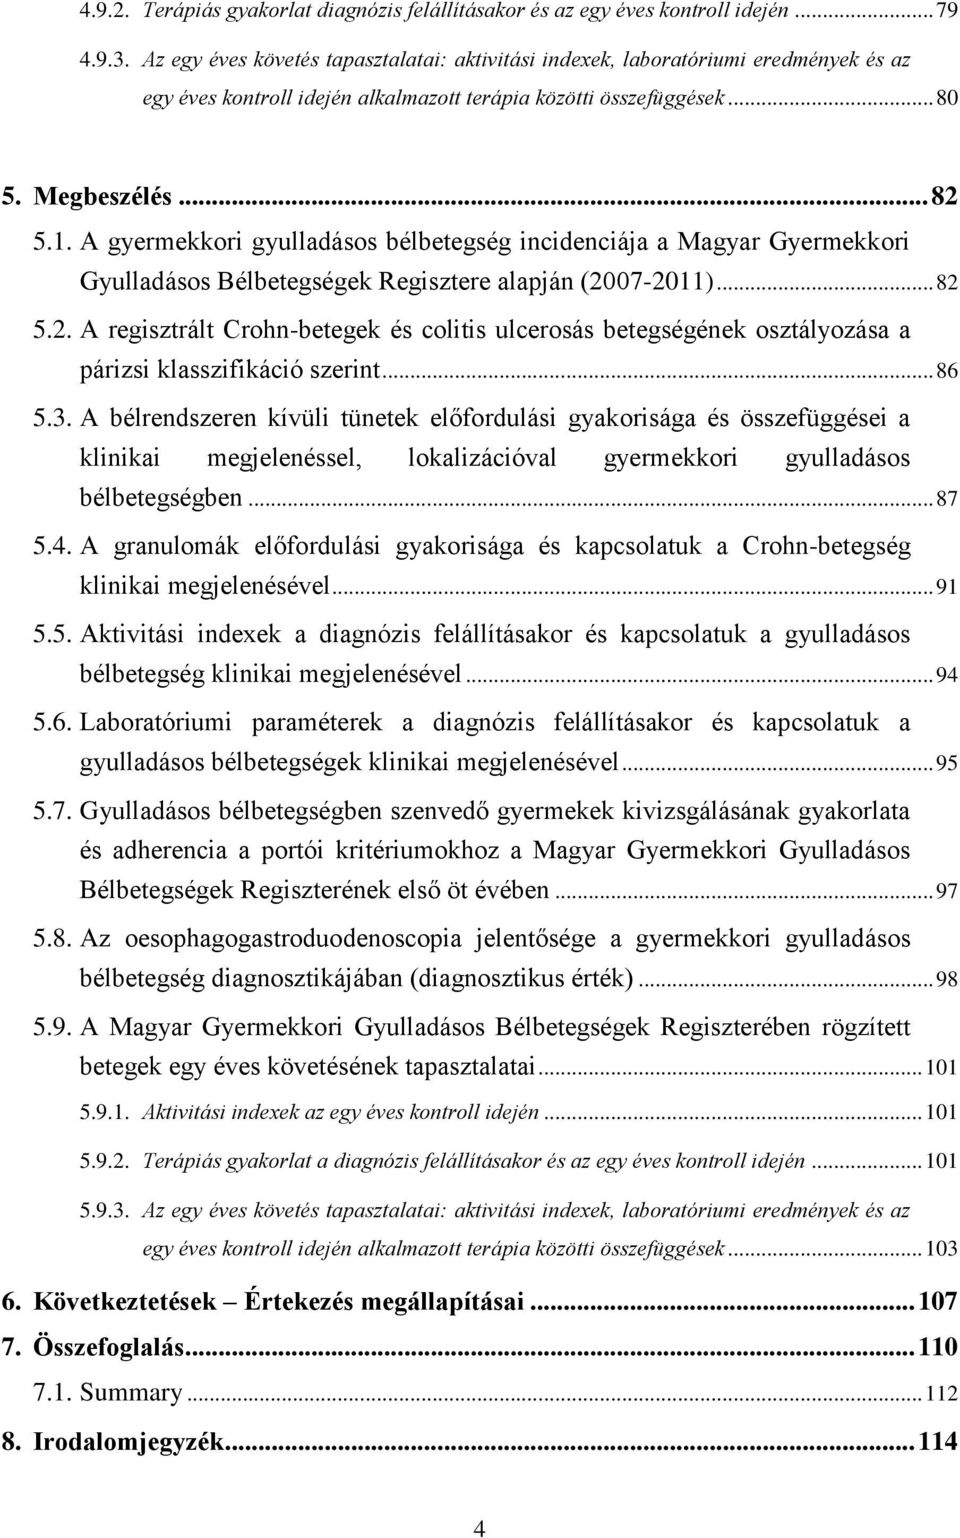 A gyermekkori gyulladásos bélbetegség incidenciája a Magyar Gyermekkori Gyulladásos Bélbetegségek Regisztere alapján (20